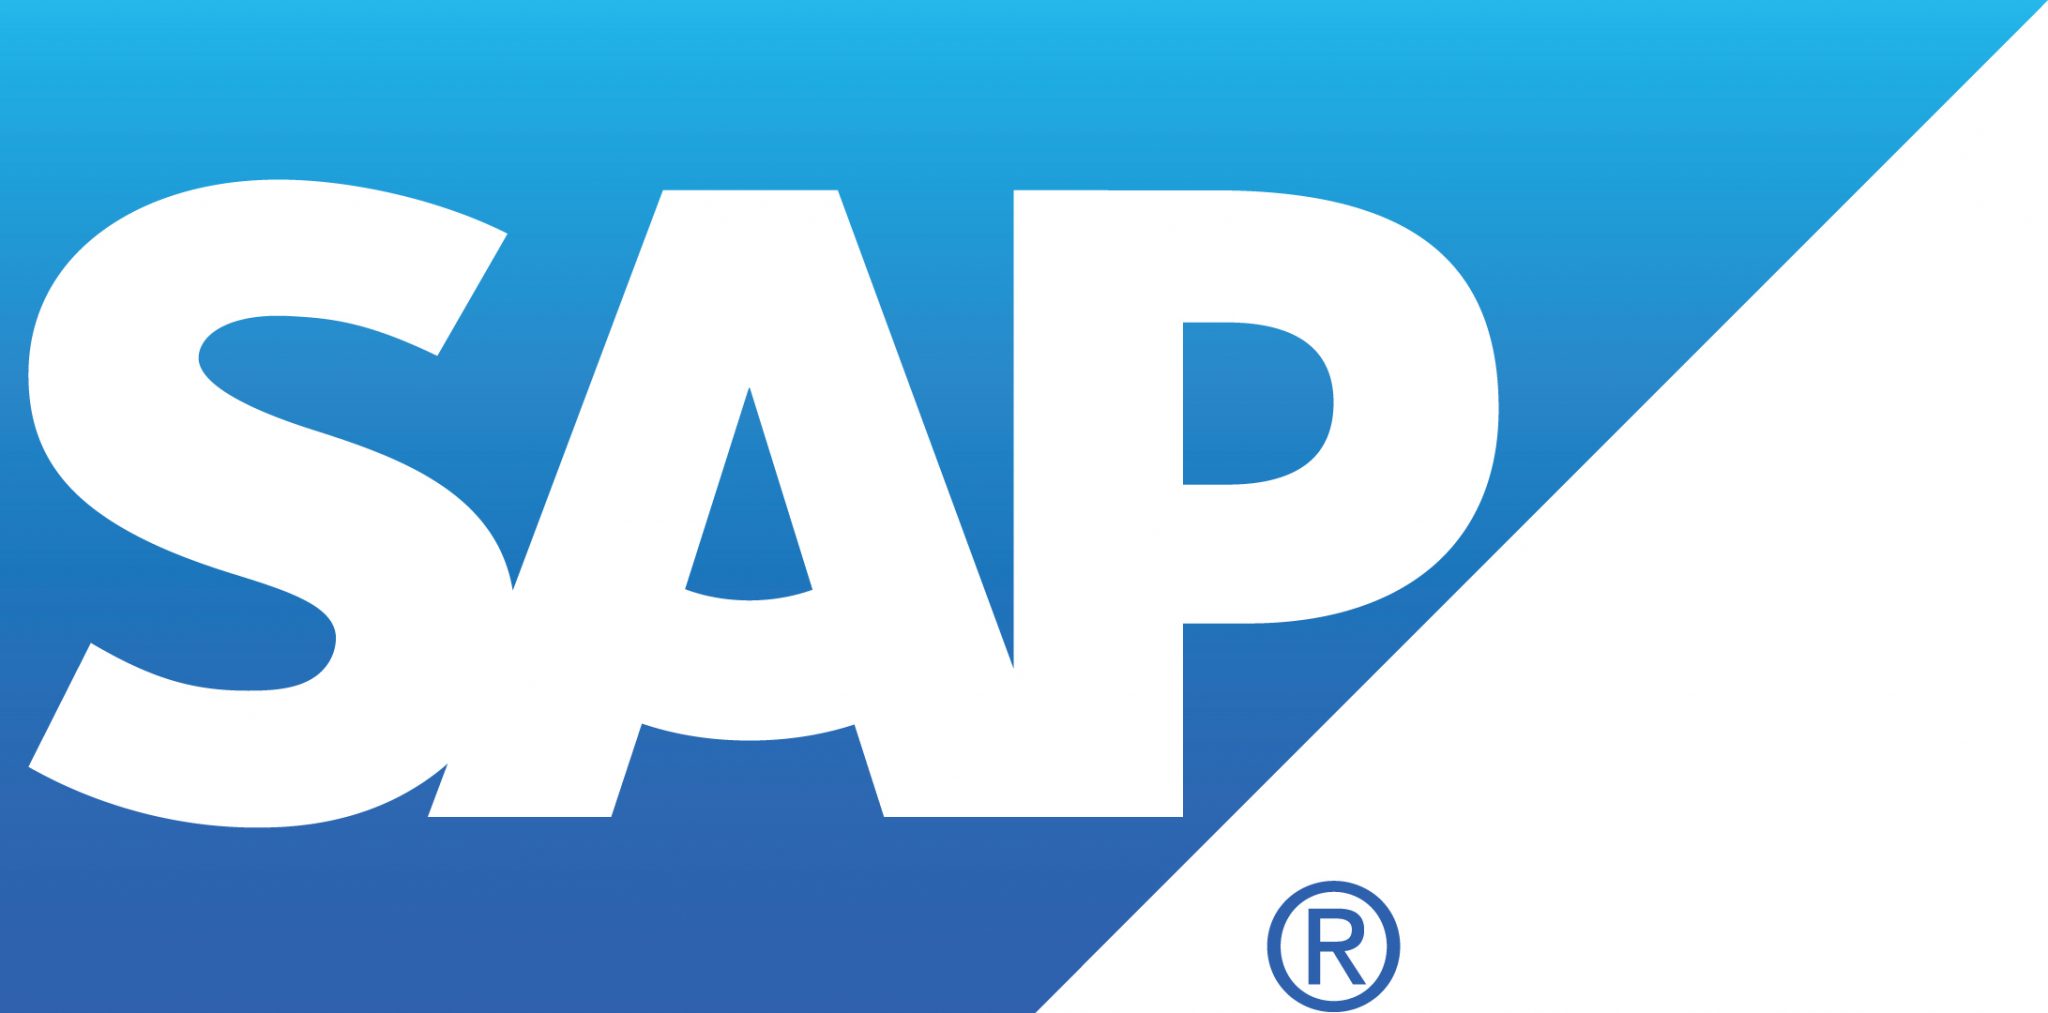 SAP's logo